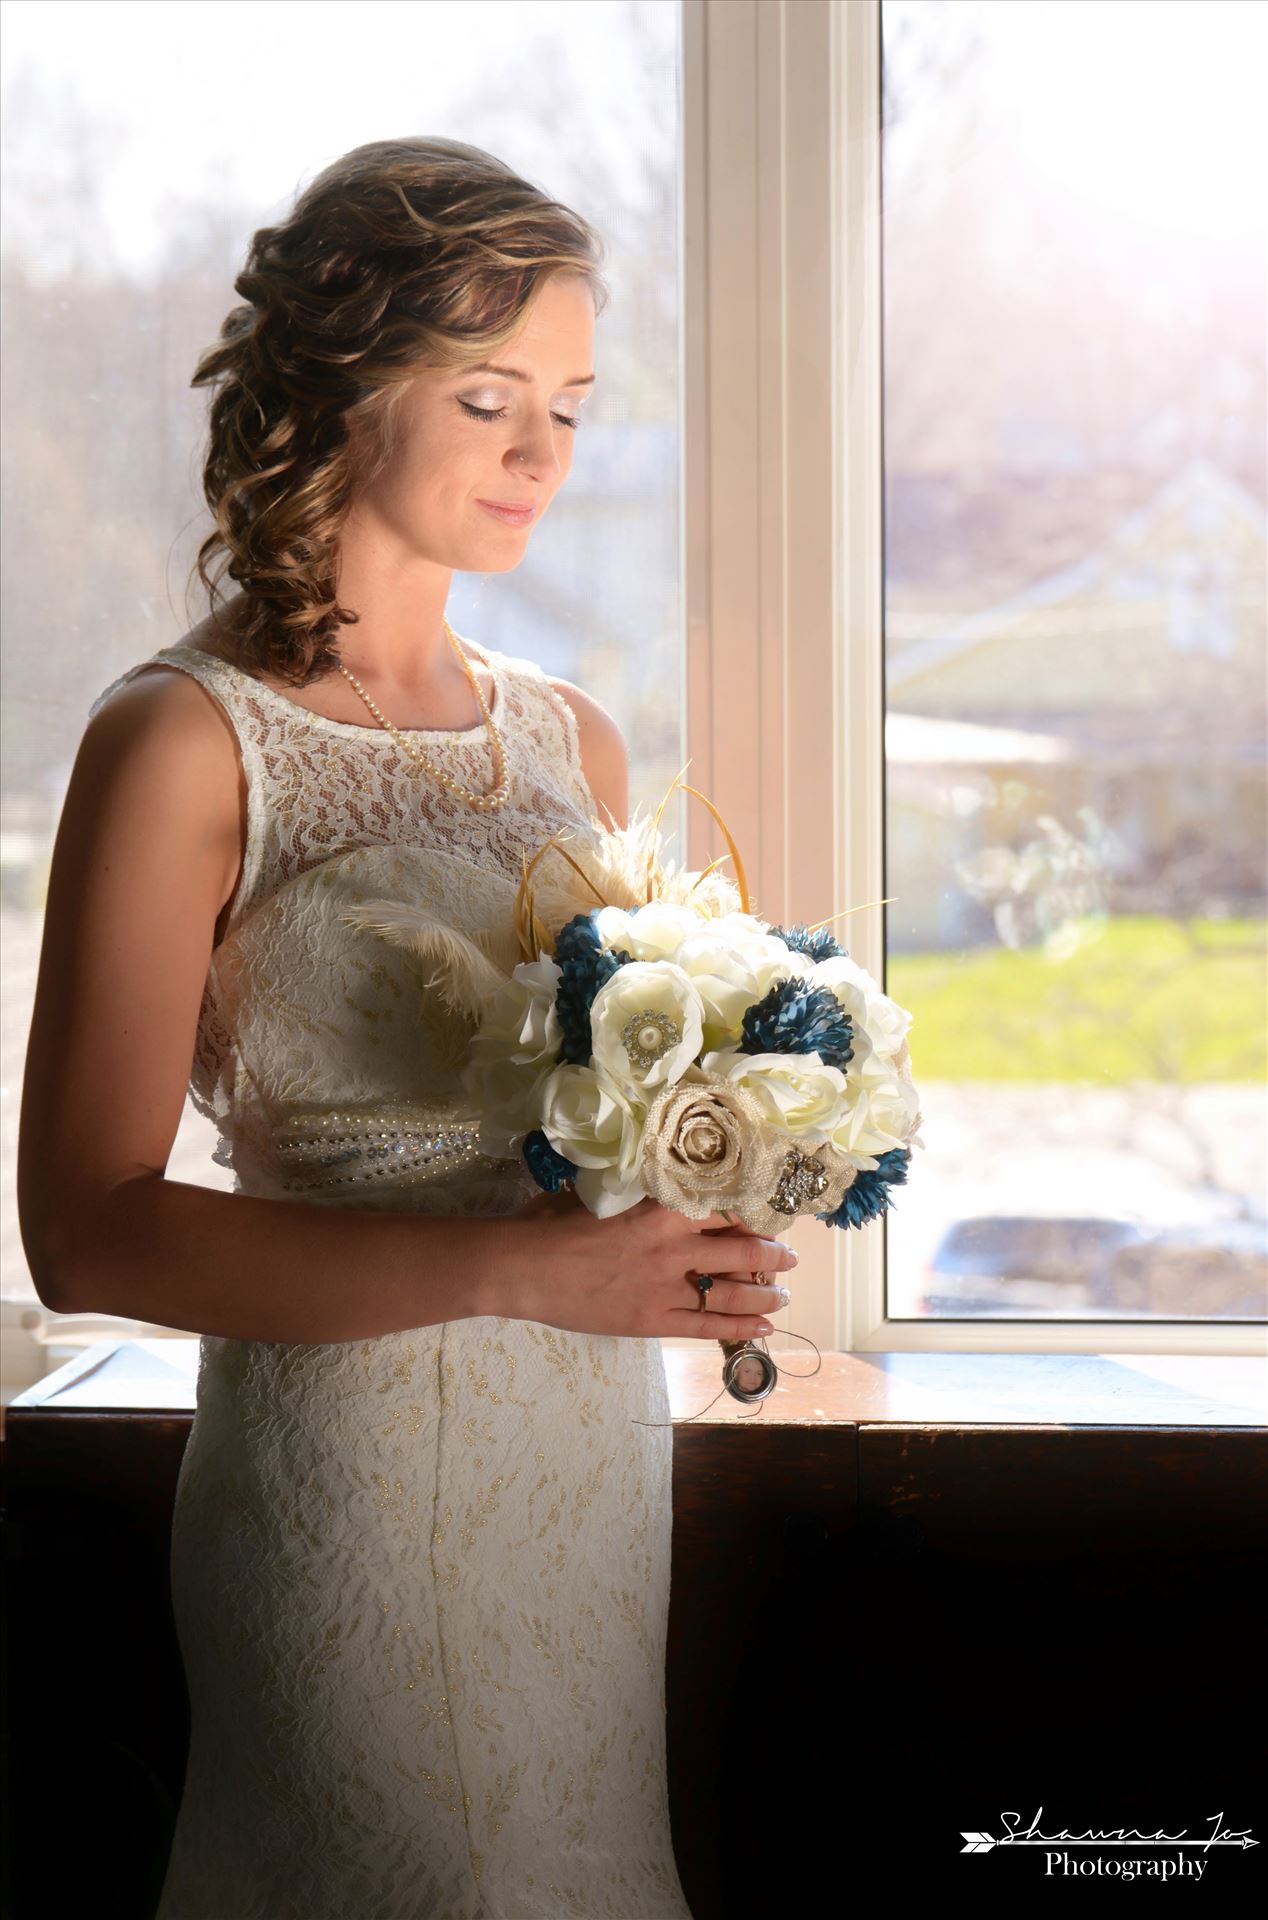 LodgeWedding2.jpg Shawna made a beautiful glowing bride by Shawna Jo Photography